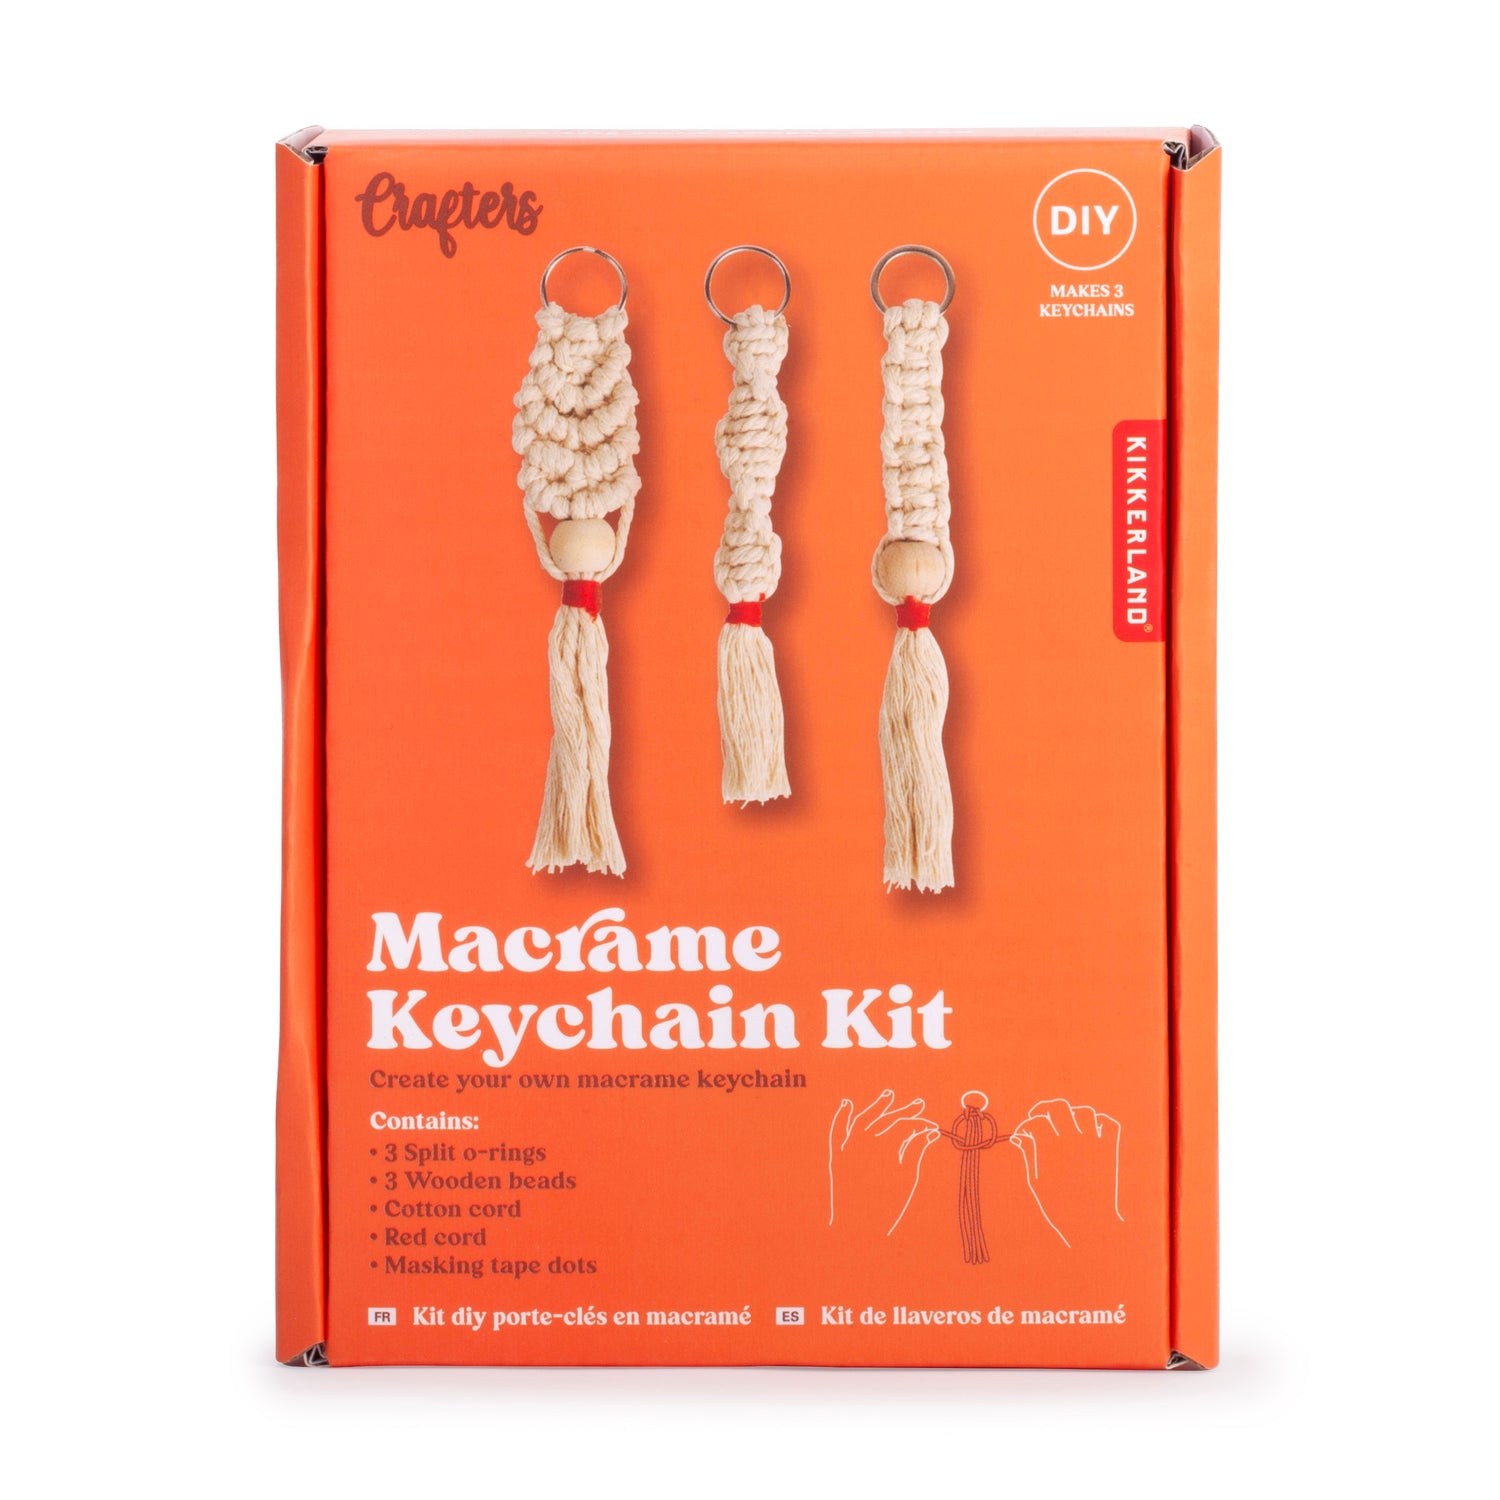 The Ring Macrame Kit